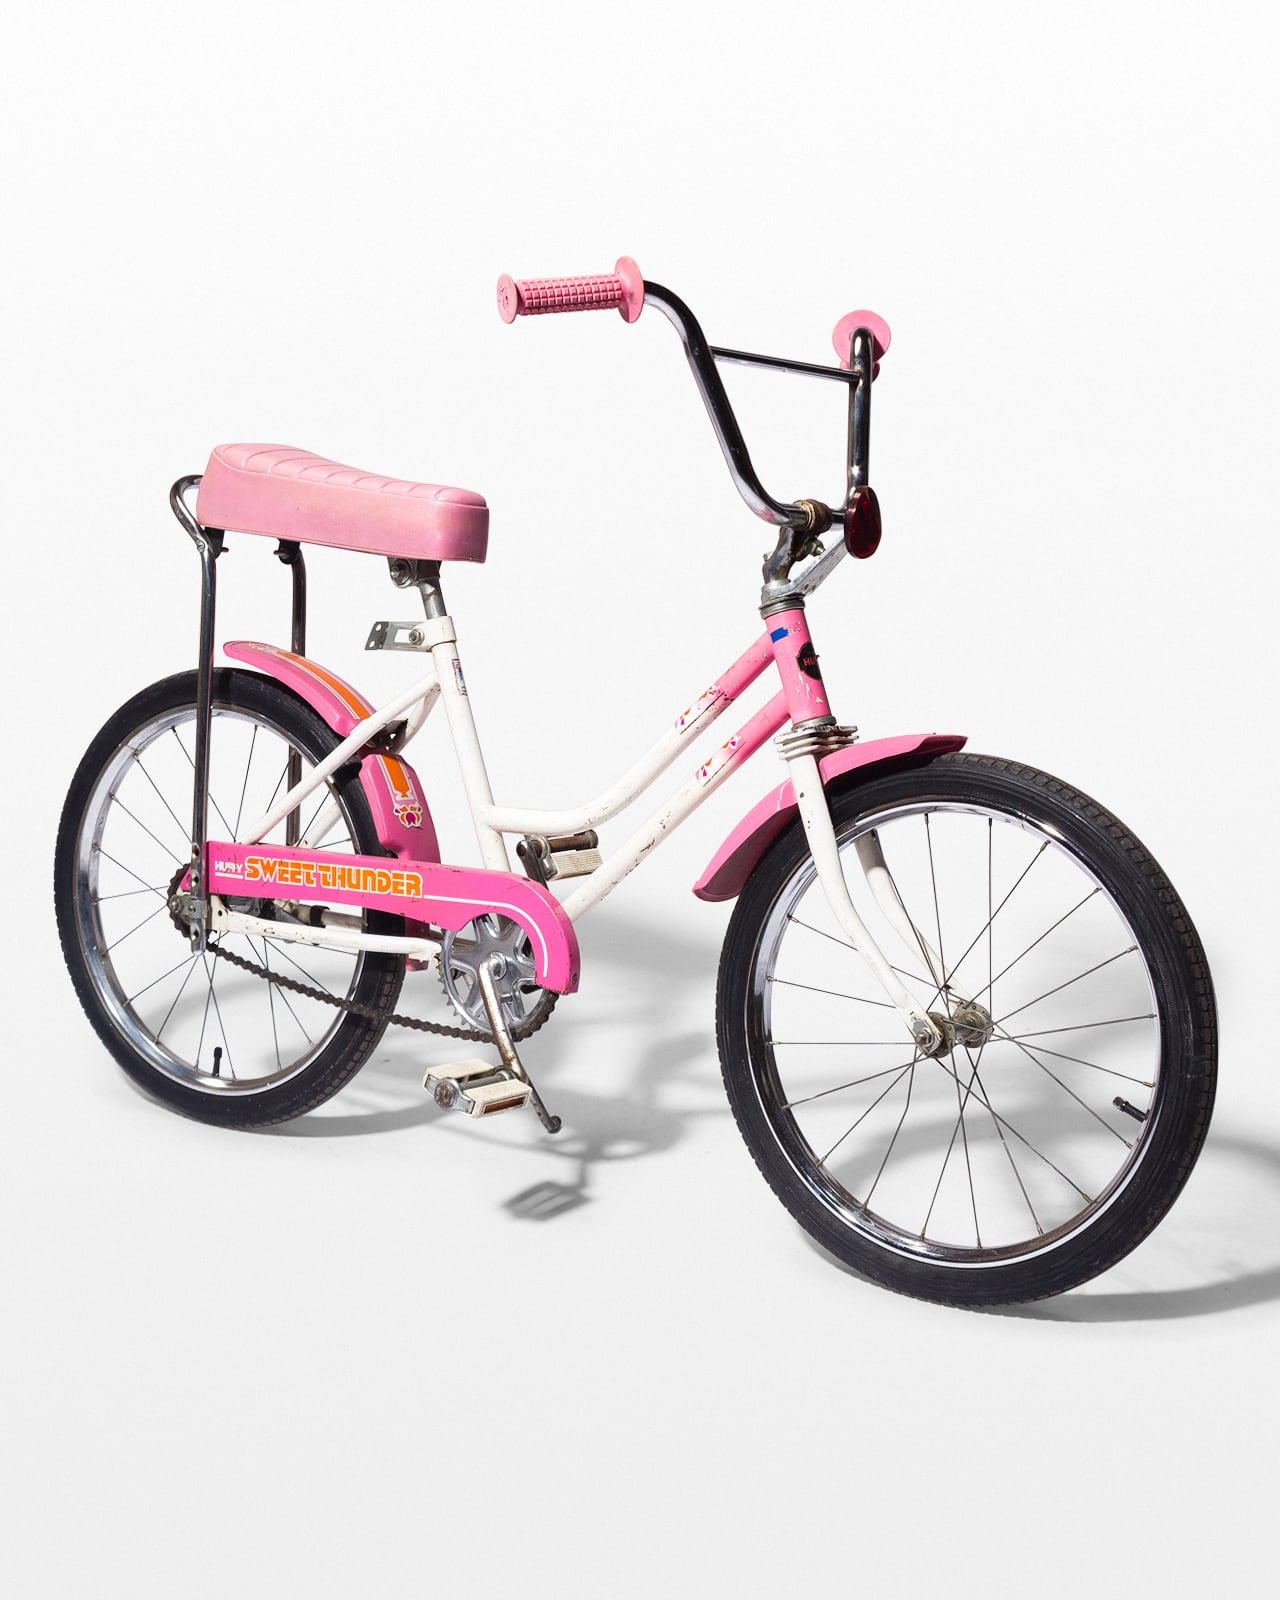 SP213 Pink Bicycle Basket Prop Rental - ACME Brooklyn